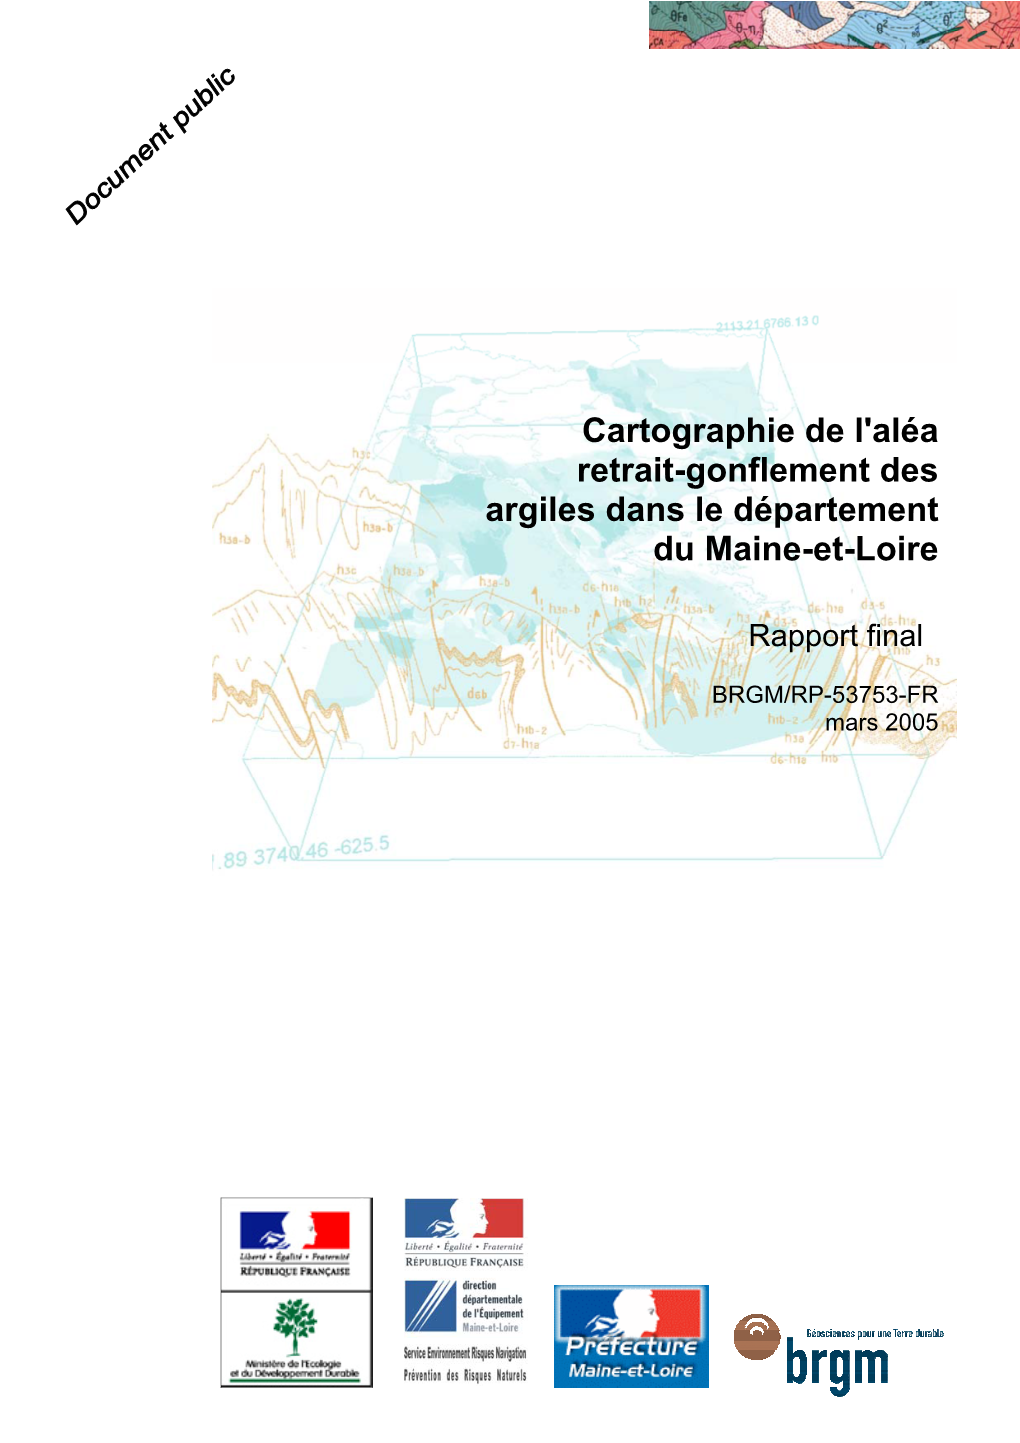 Cartographie De L'aléa Retrait-Gonflement Des Argiles Dans Le Département Du Maine-Et-Loire